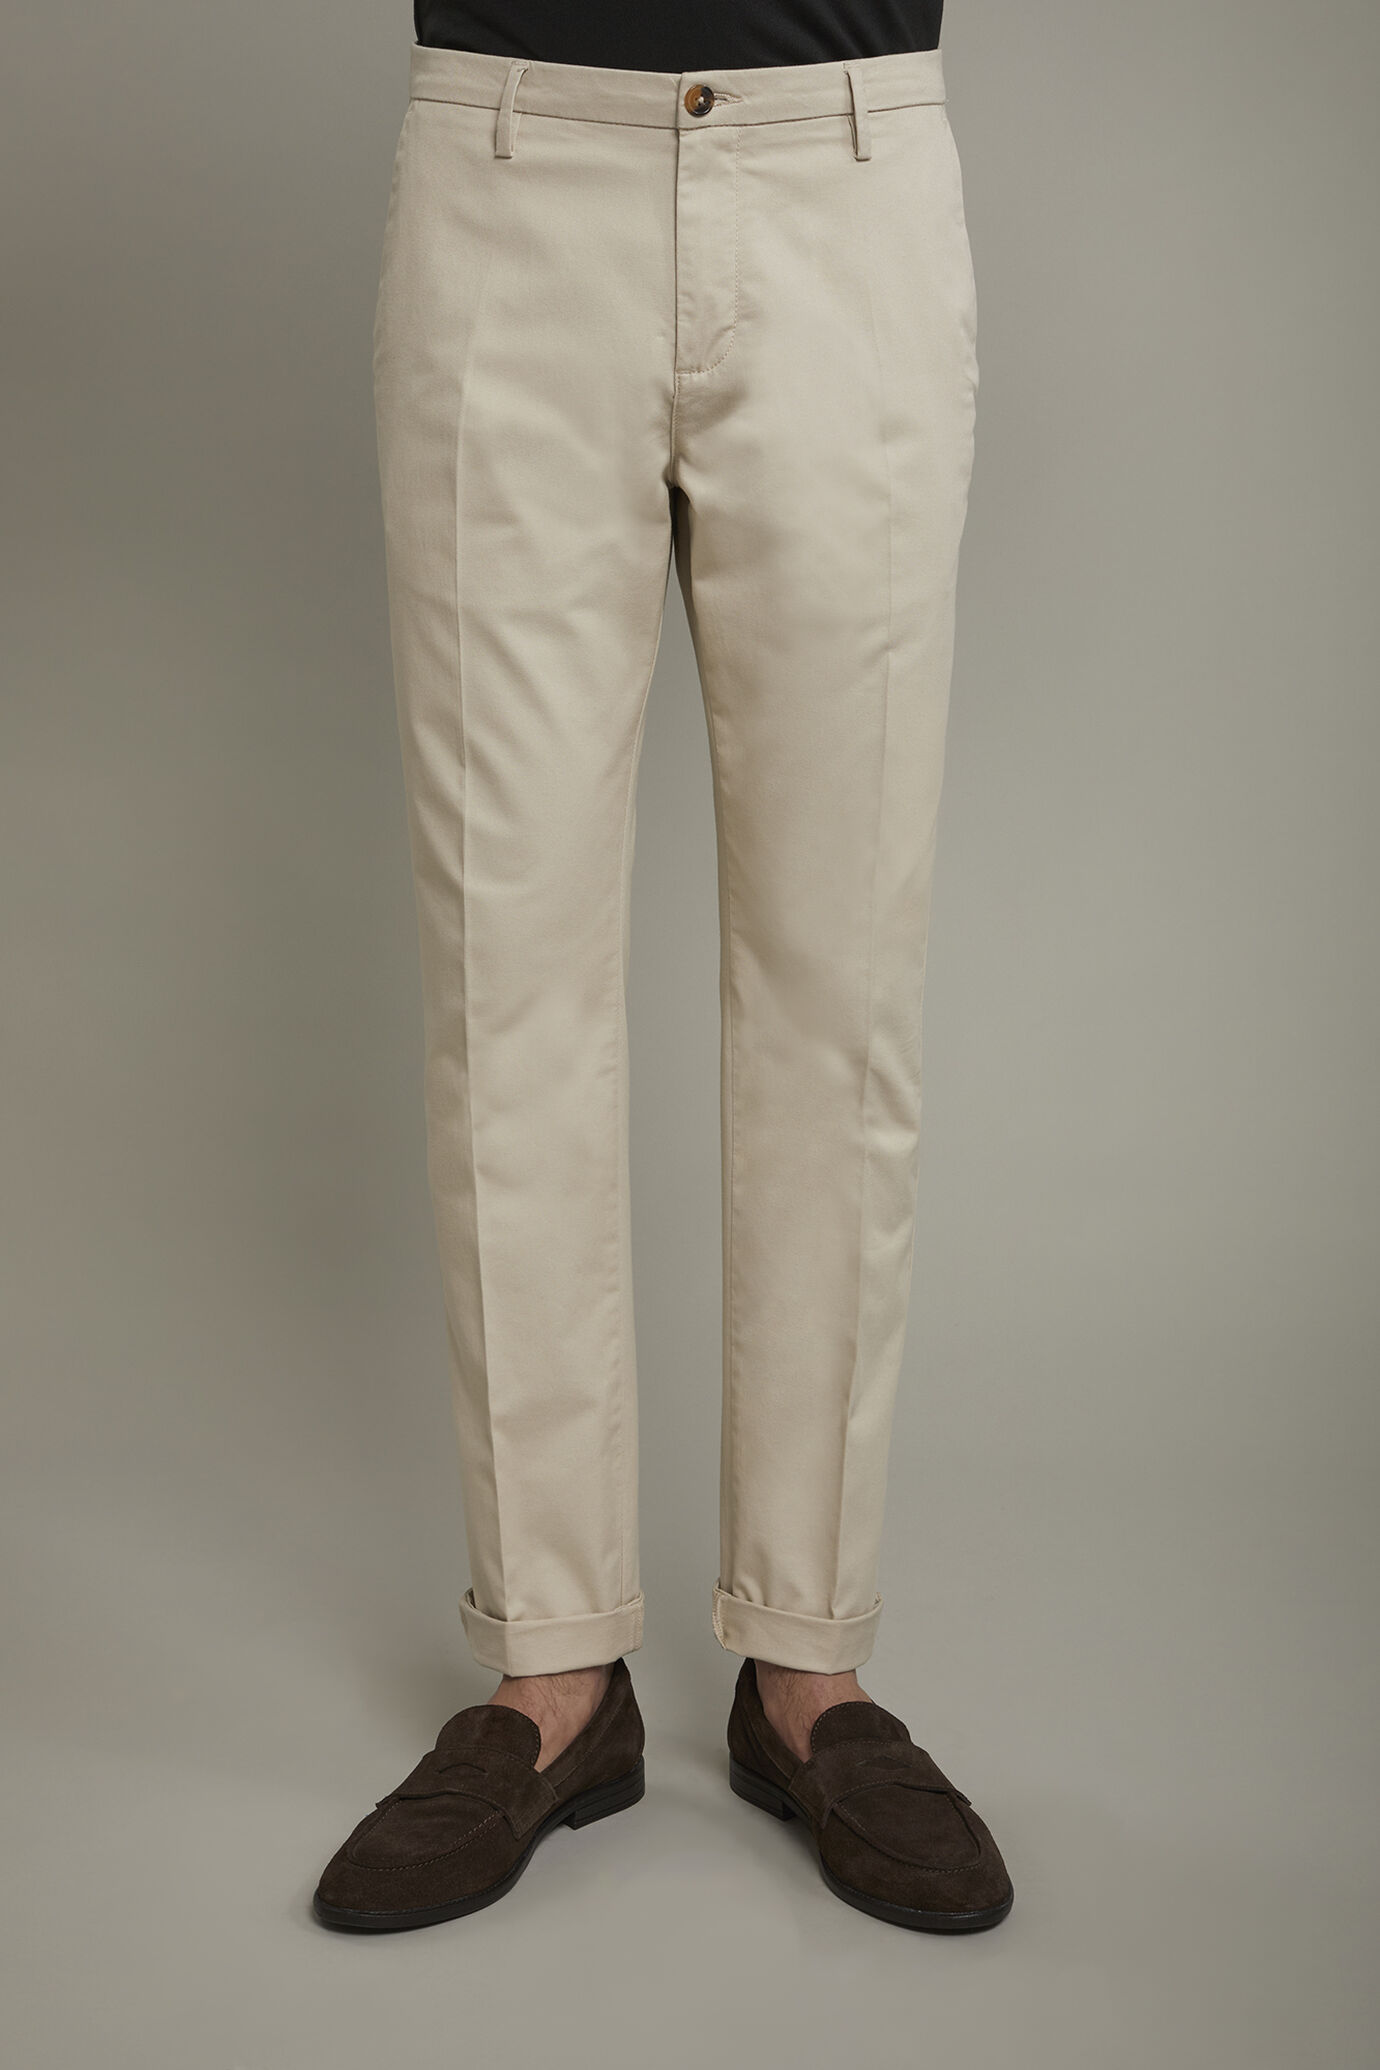 Pantalone chino uomo classico costruzione twill elasticizzato perfect fit image number 3